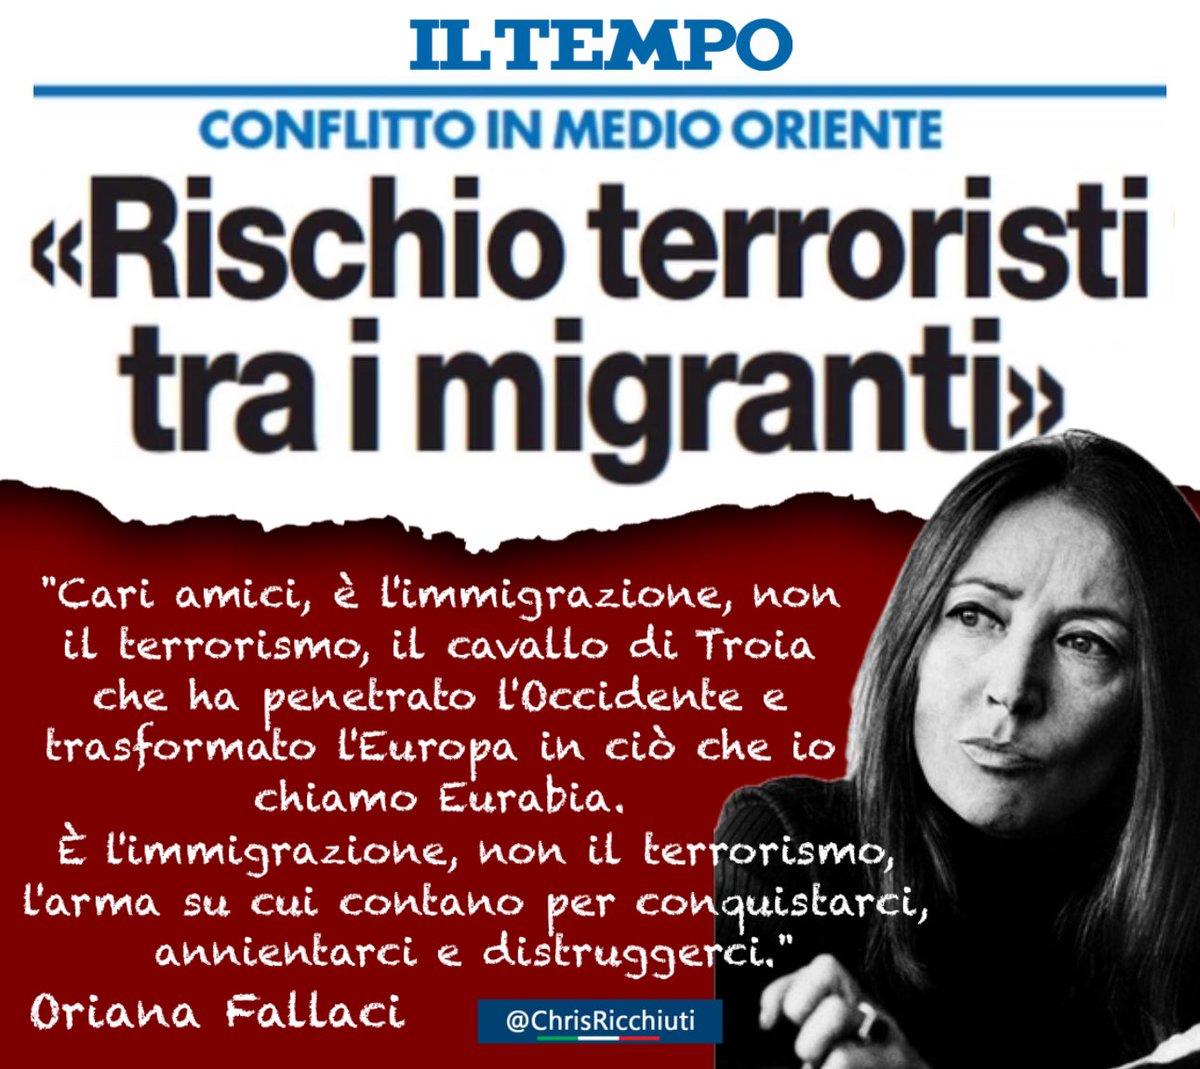 Oriana Fallaci lo aveva già detto.
#15Ottobre